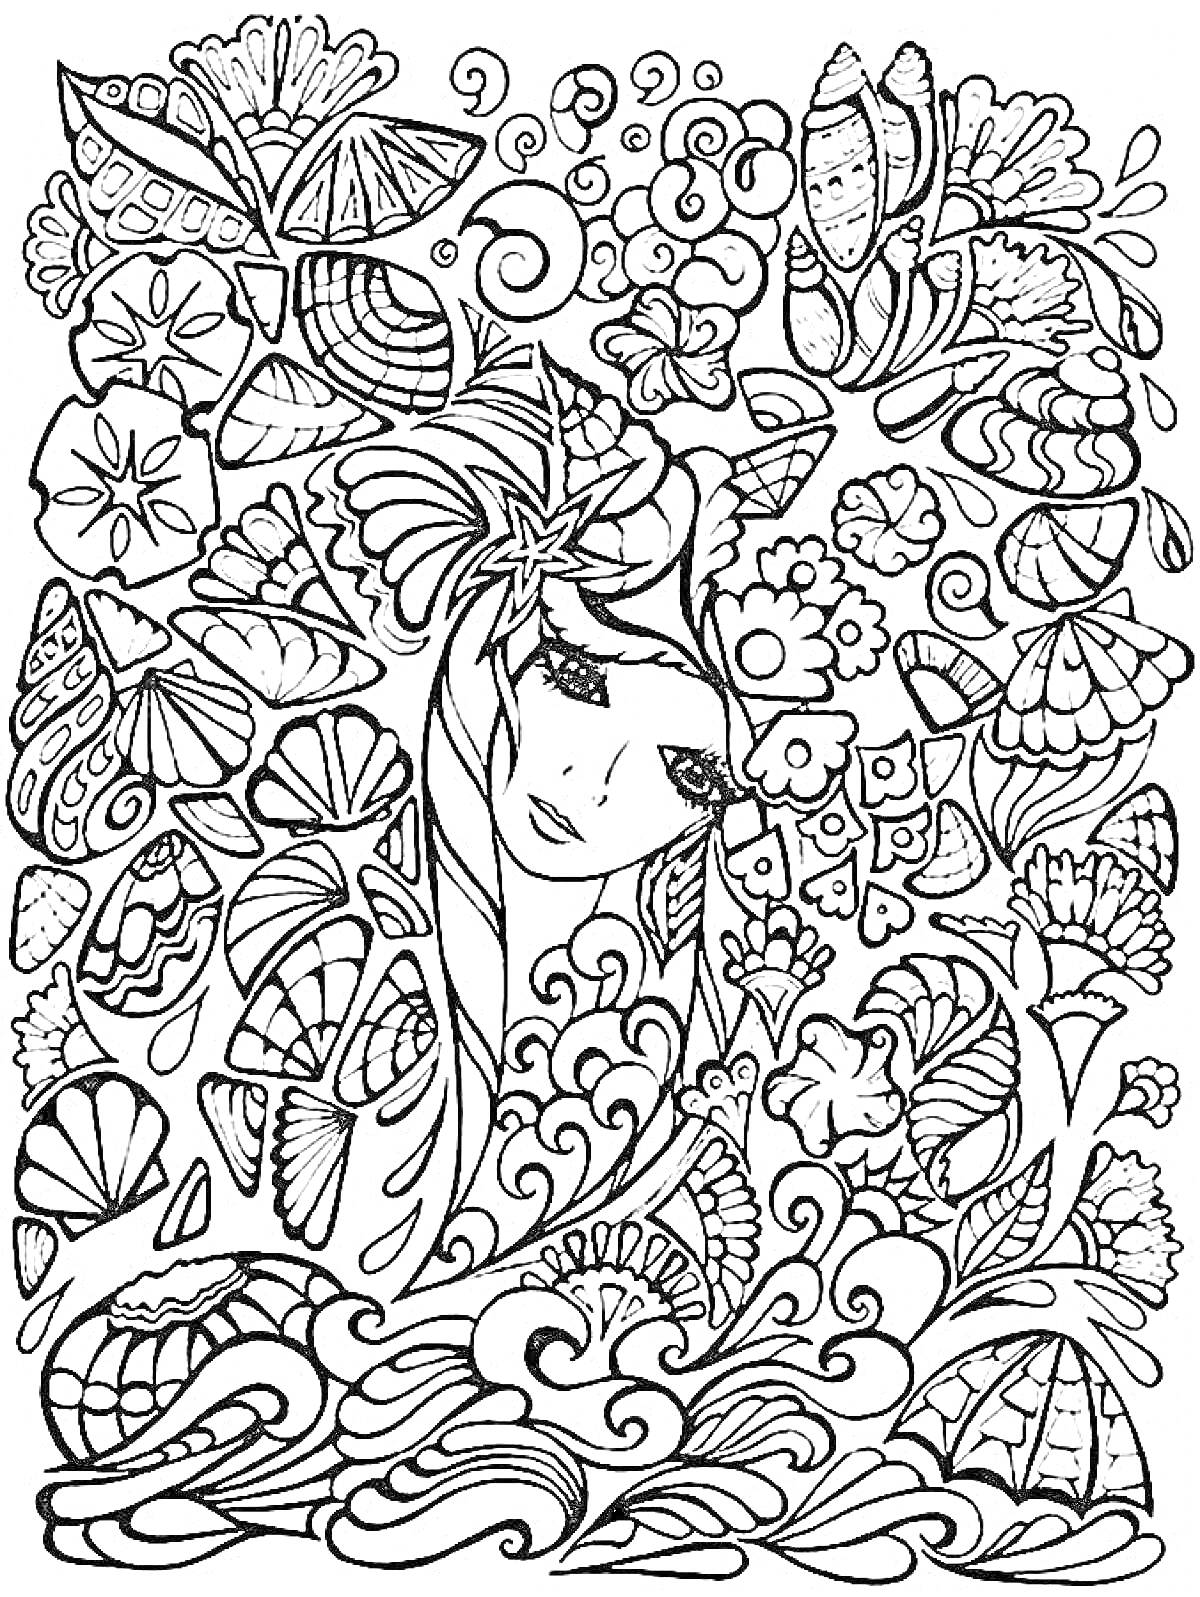 Раскраска Женский портрет в окружении цветов, волн, ракушек и листьев